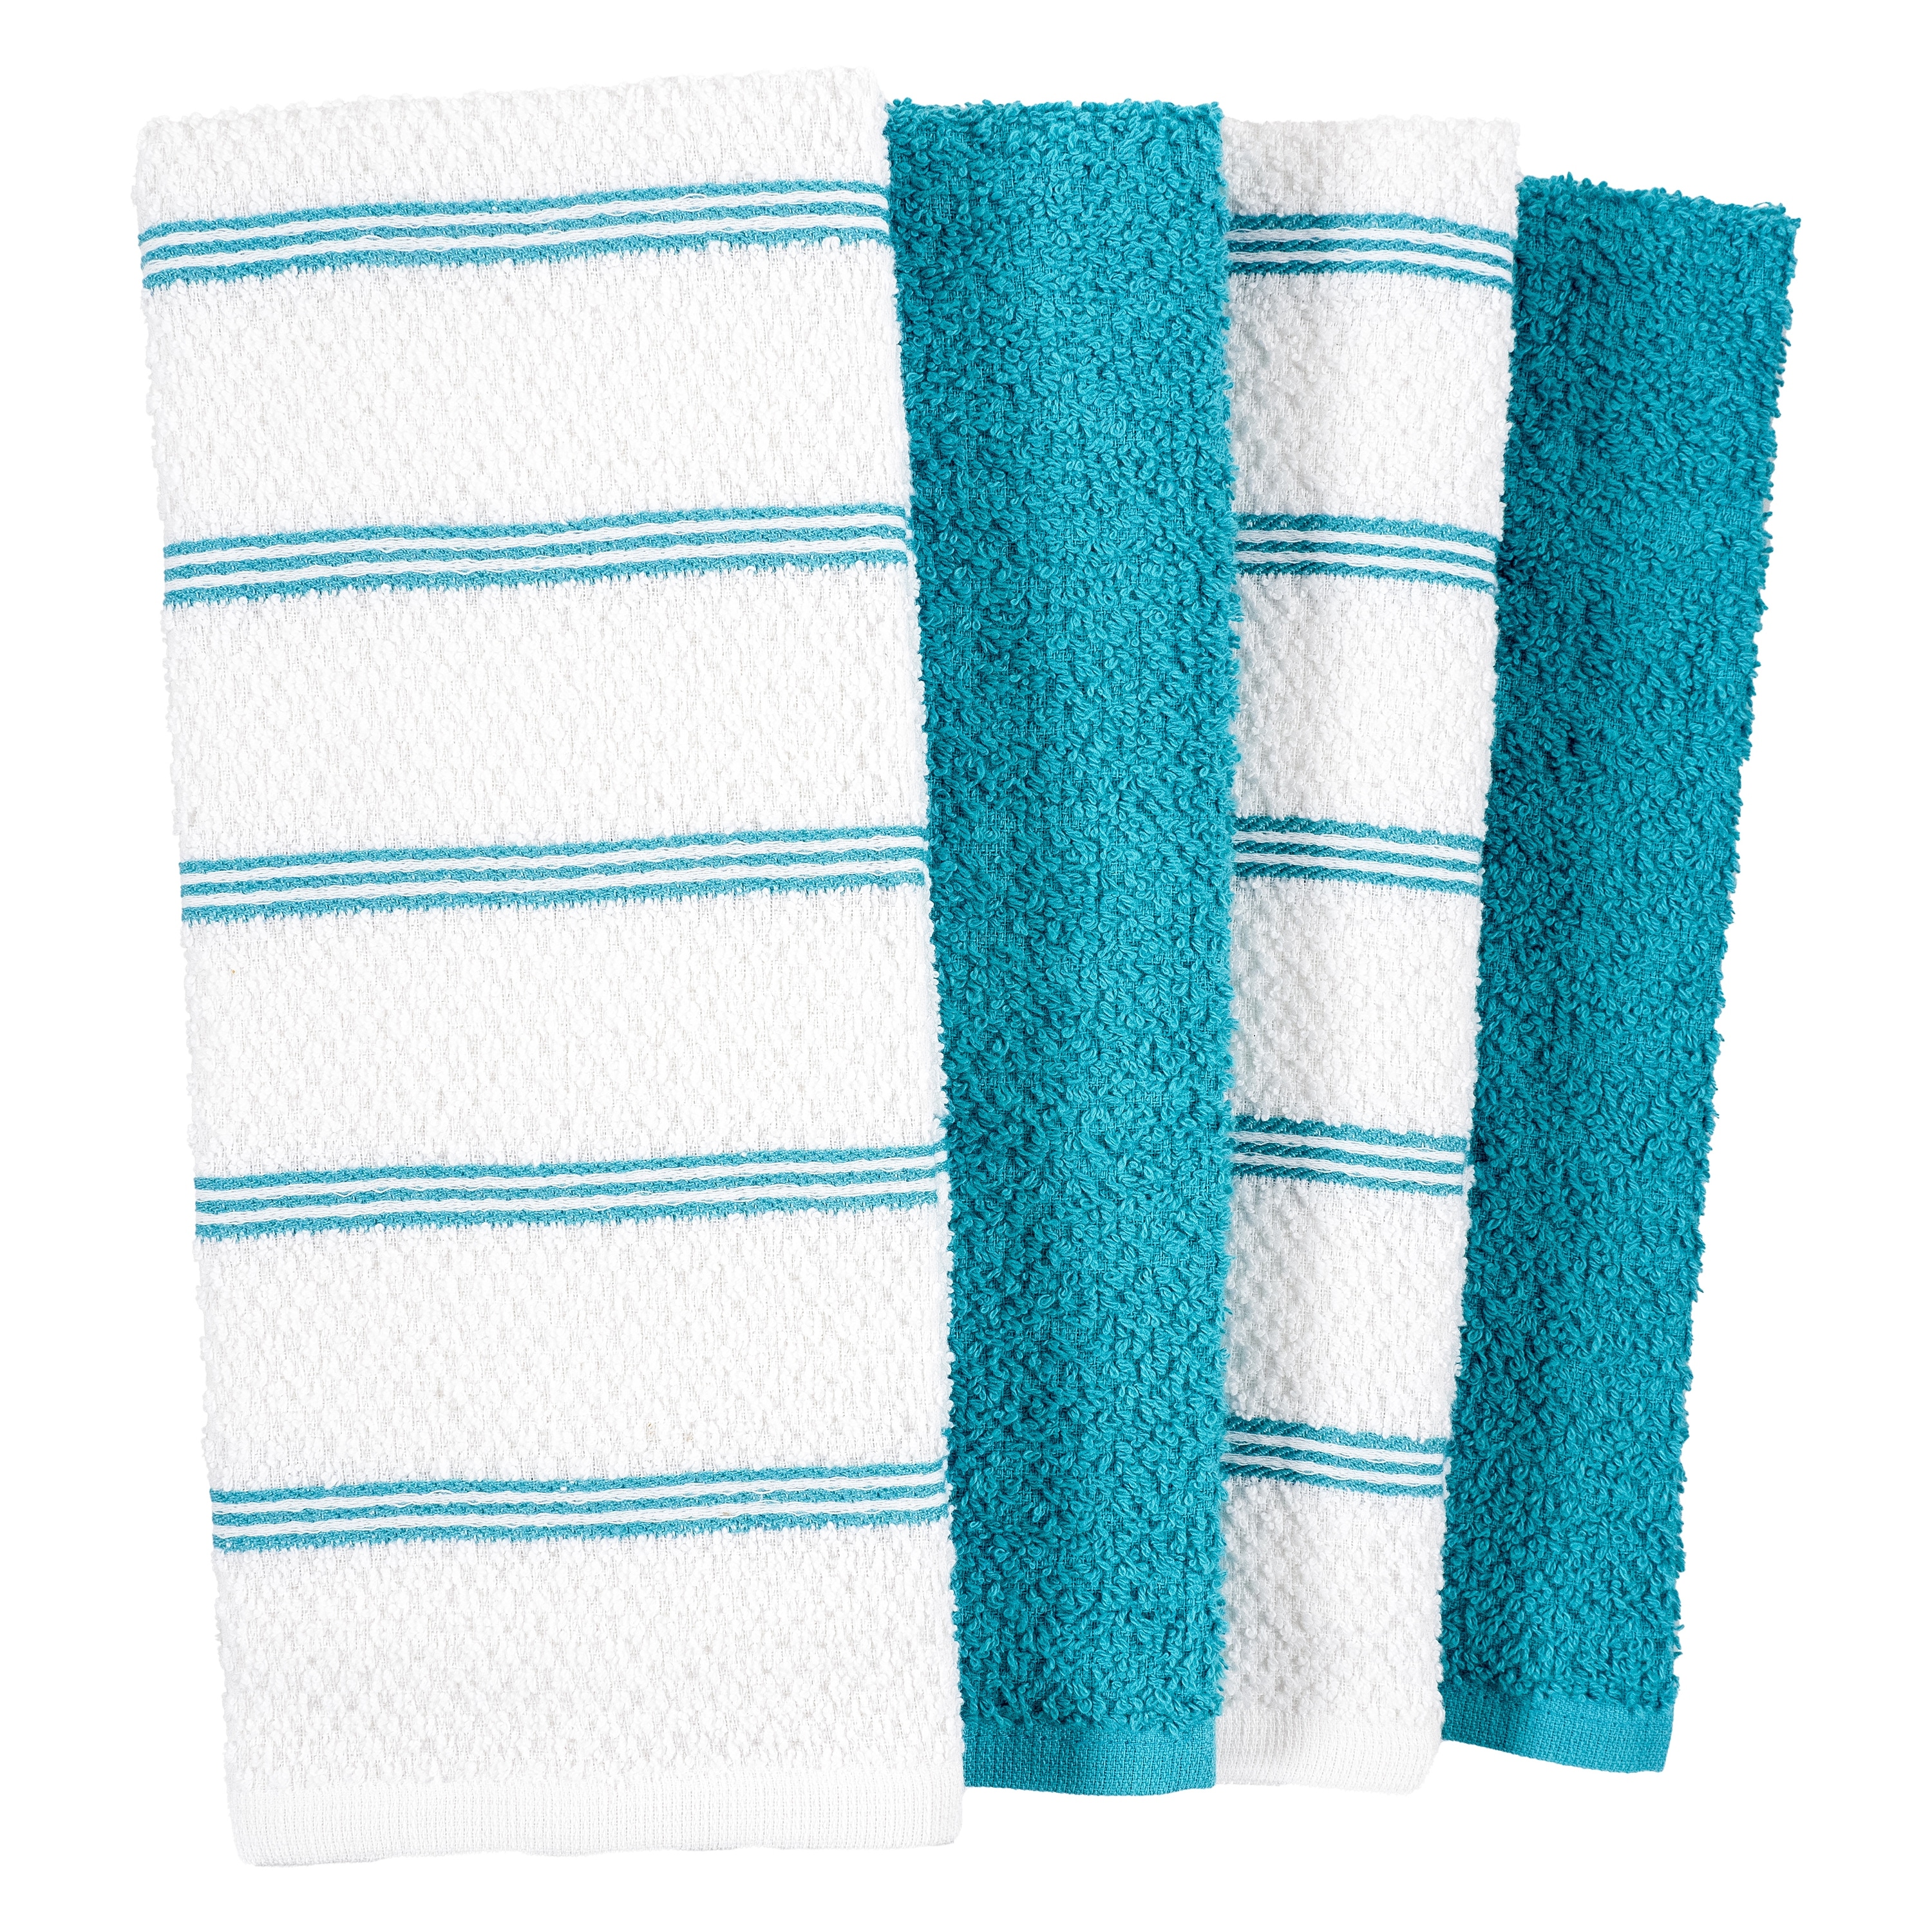 KitchenAid Albany Kitchen Towel 4-Pack Set, Cotton, Pistachio/White, 16x26